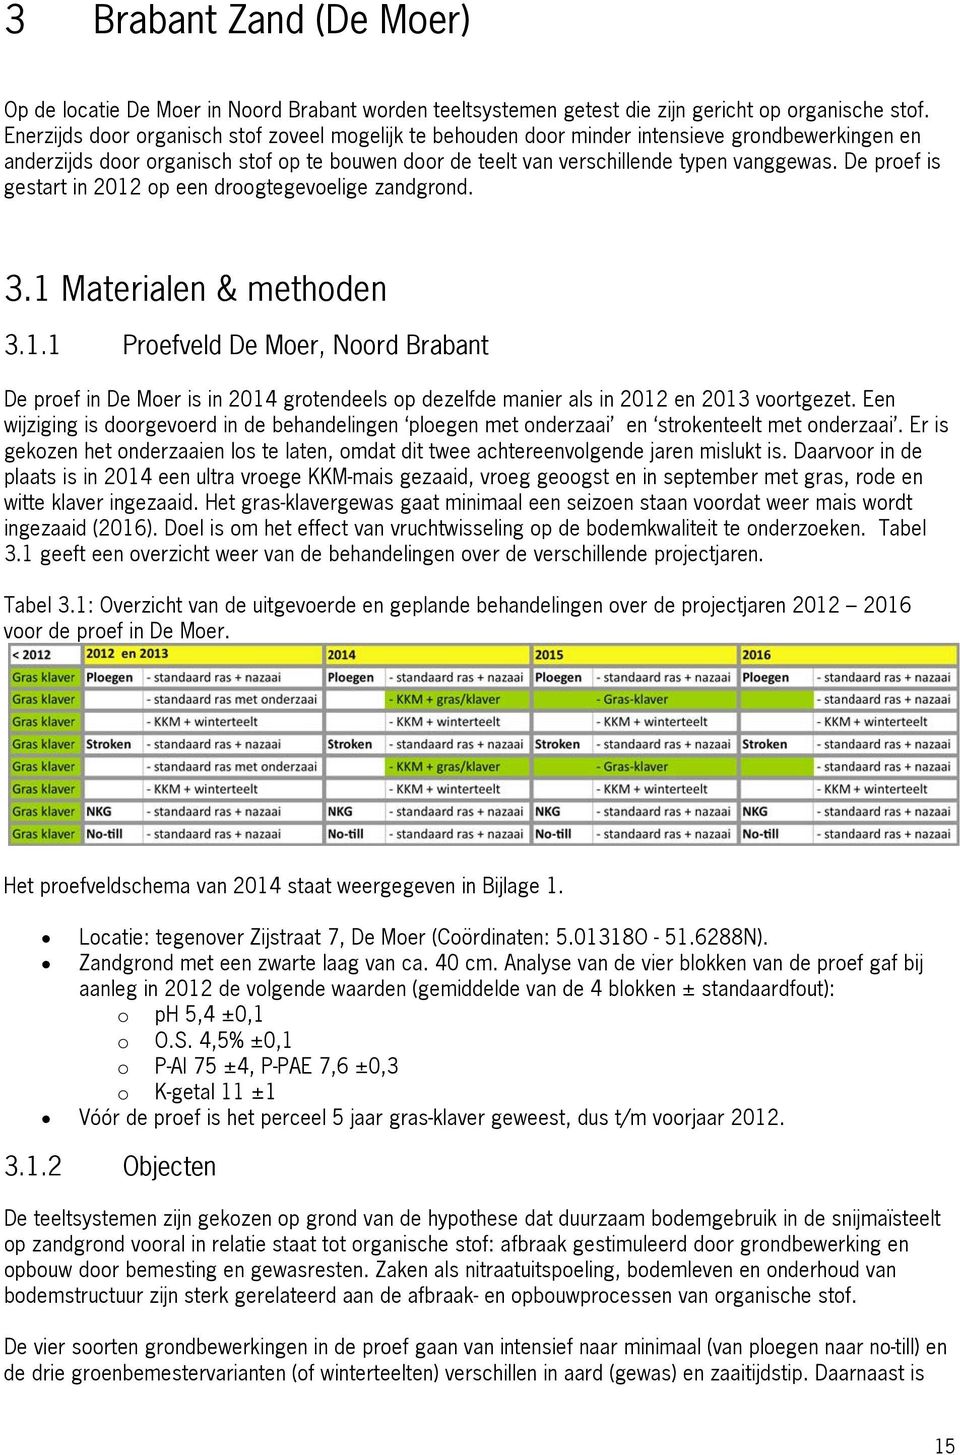 De proef is gestart in 2012 op een droogtegevoelige zandgrond. 3.1 Materialen & methoden 3.1.1 Proefveld De Moer, Noord Brabant De proef in De Moer is in 2014 grotendeels op dezelfde manier als in 2012 en 2013 voortgezet.